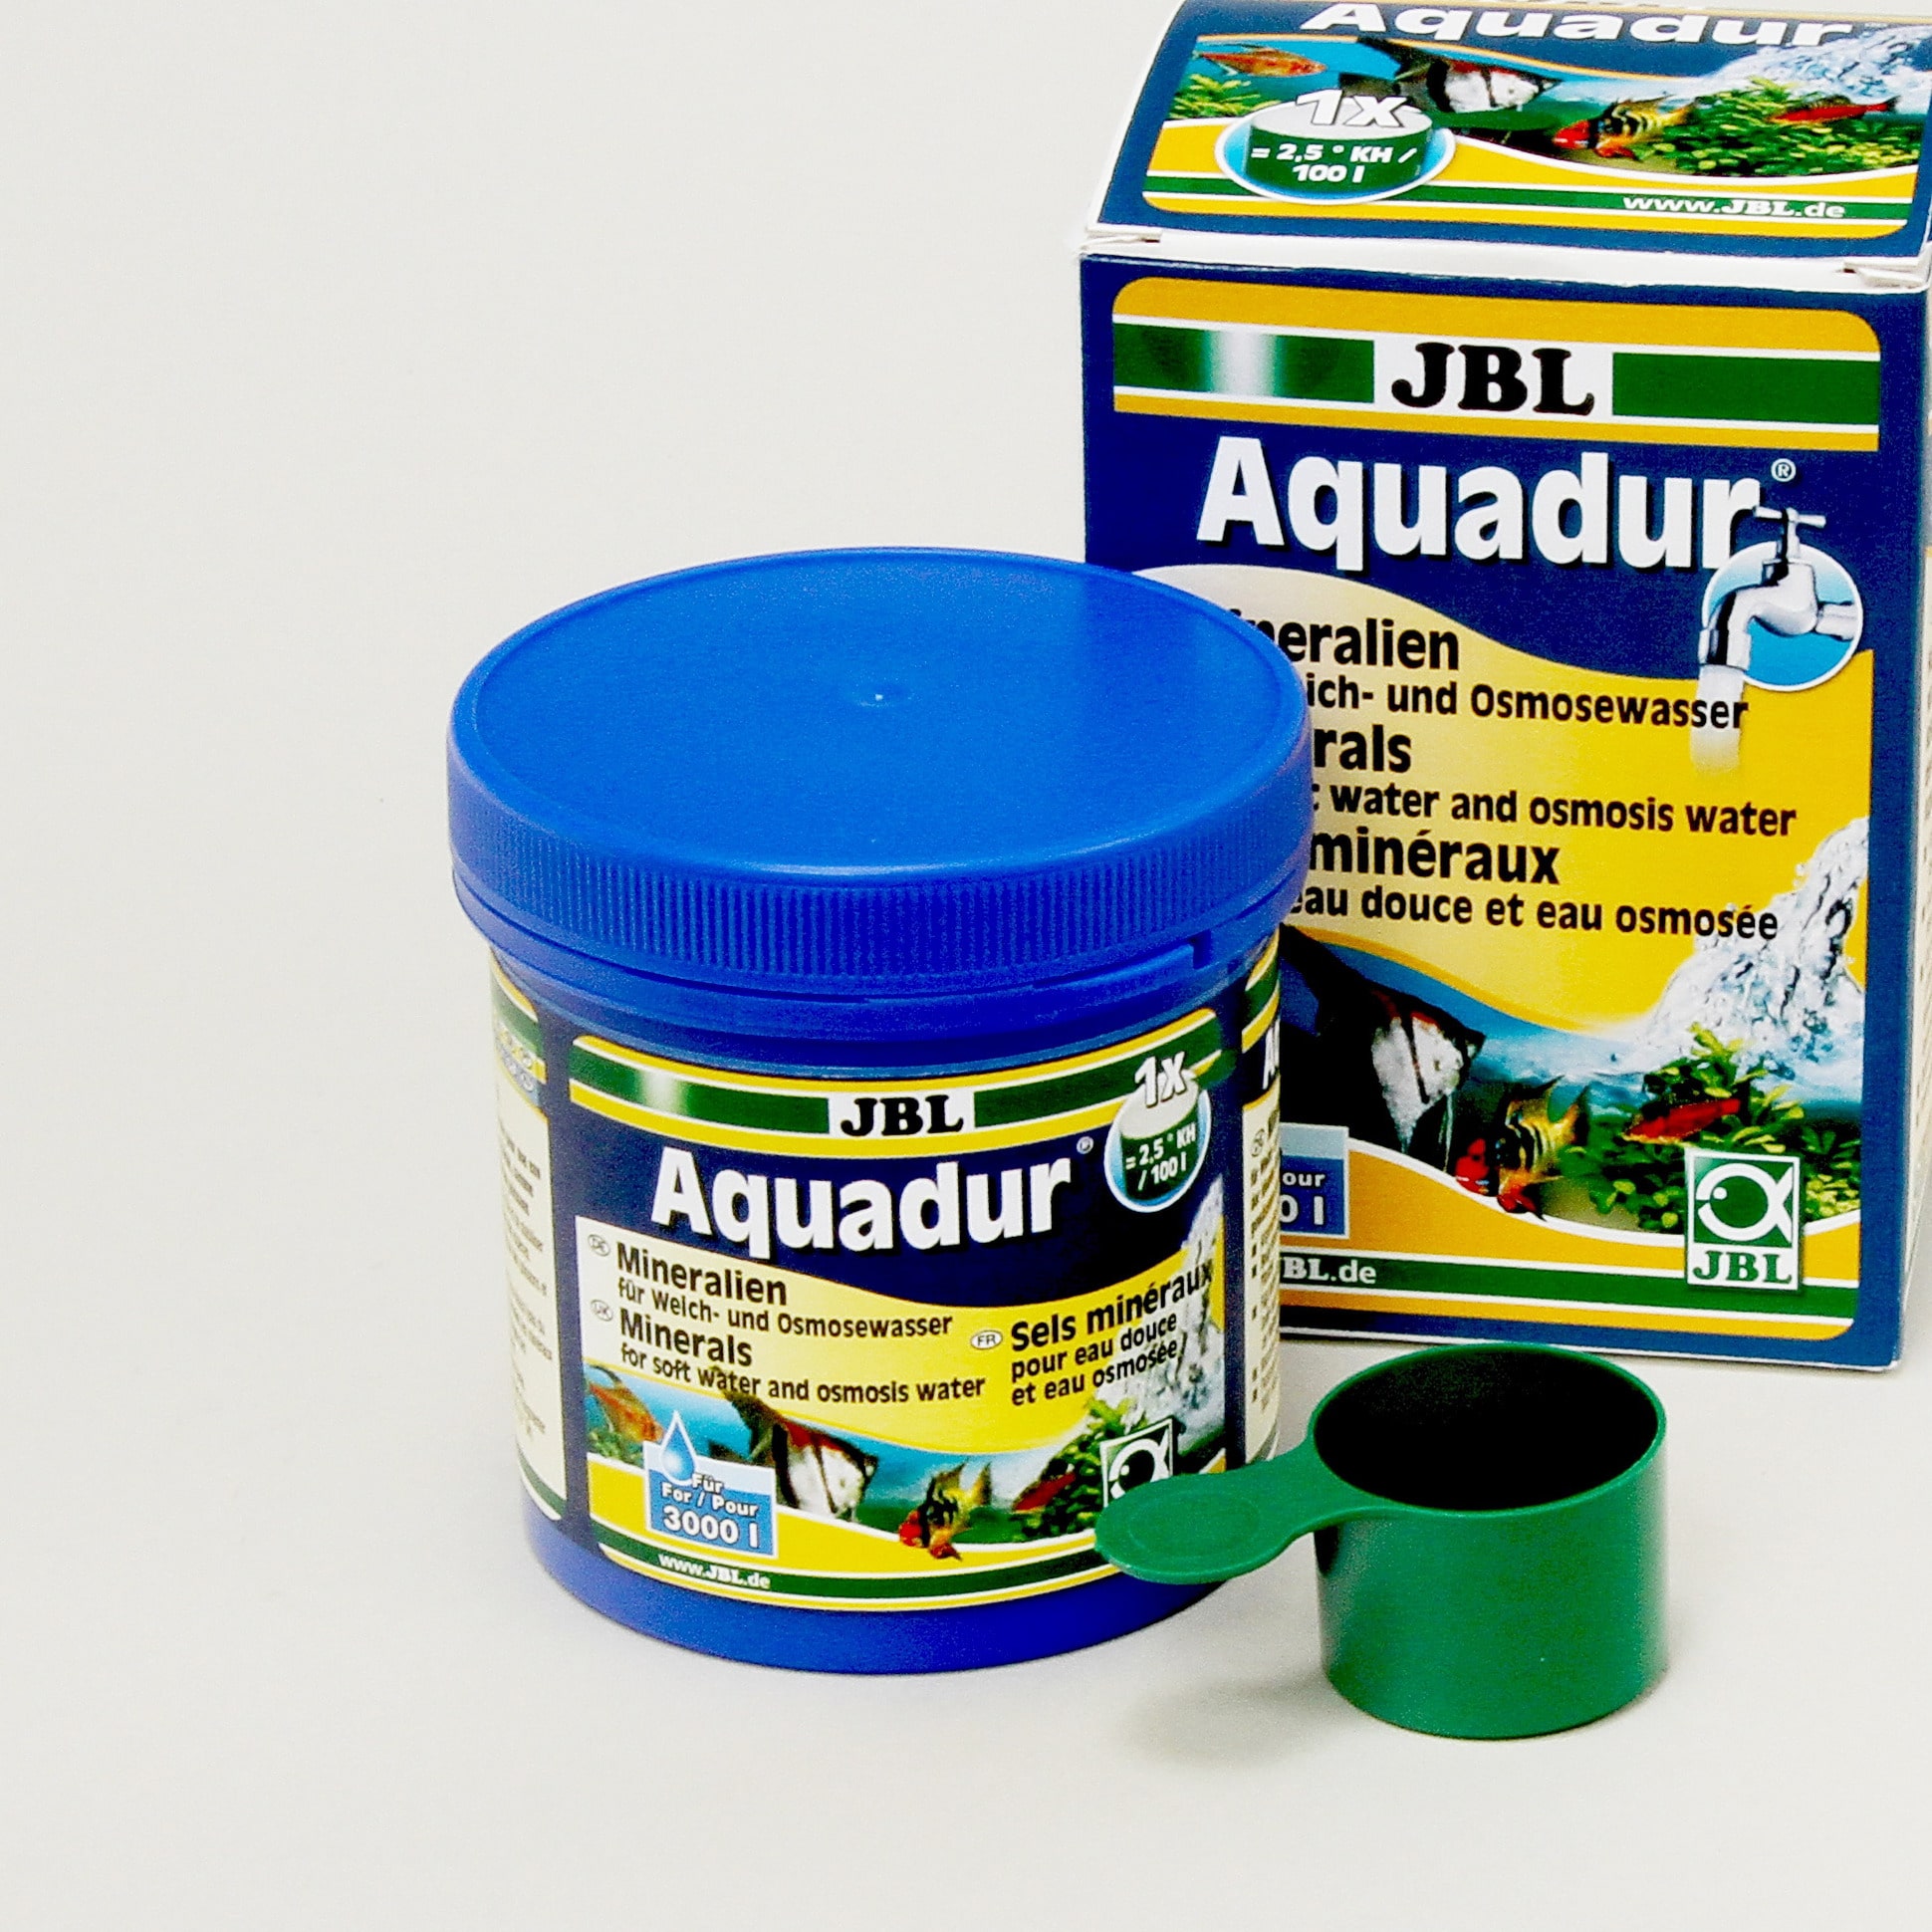 jbl-aquadur-plus-apporte-a-l-eau-douce-ou-a-l-eau-osmosee-plus-de-70-sels-differents-3-min